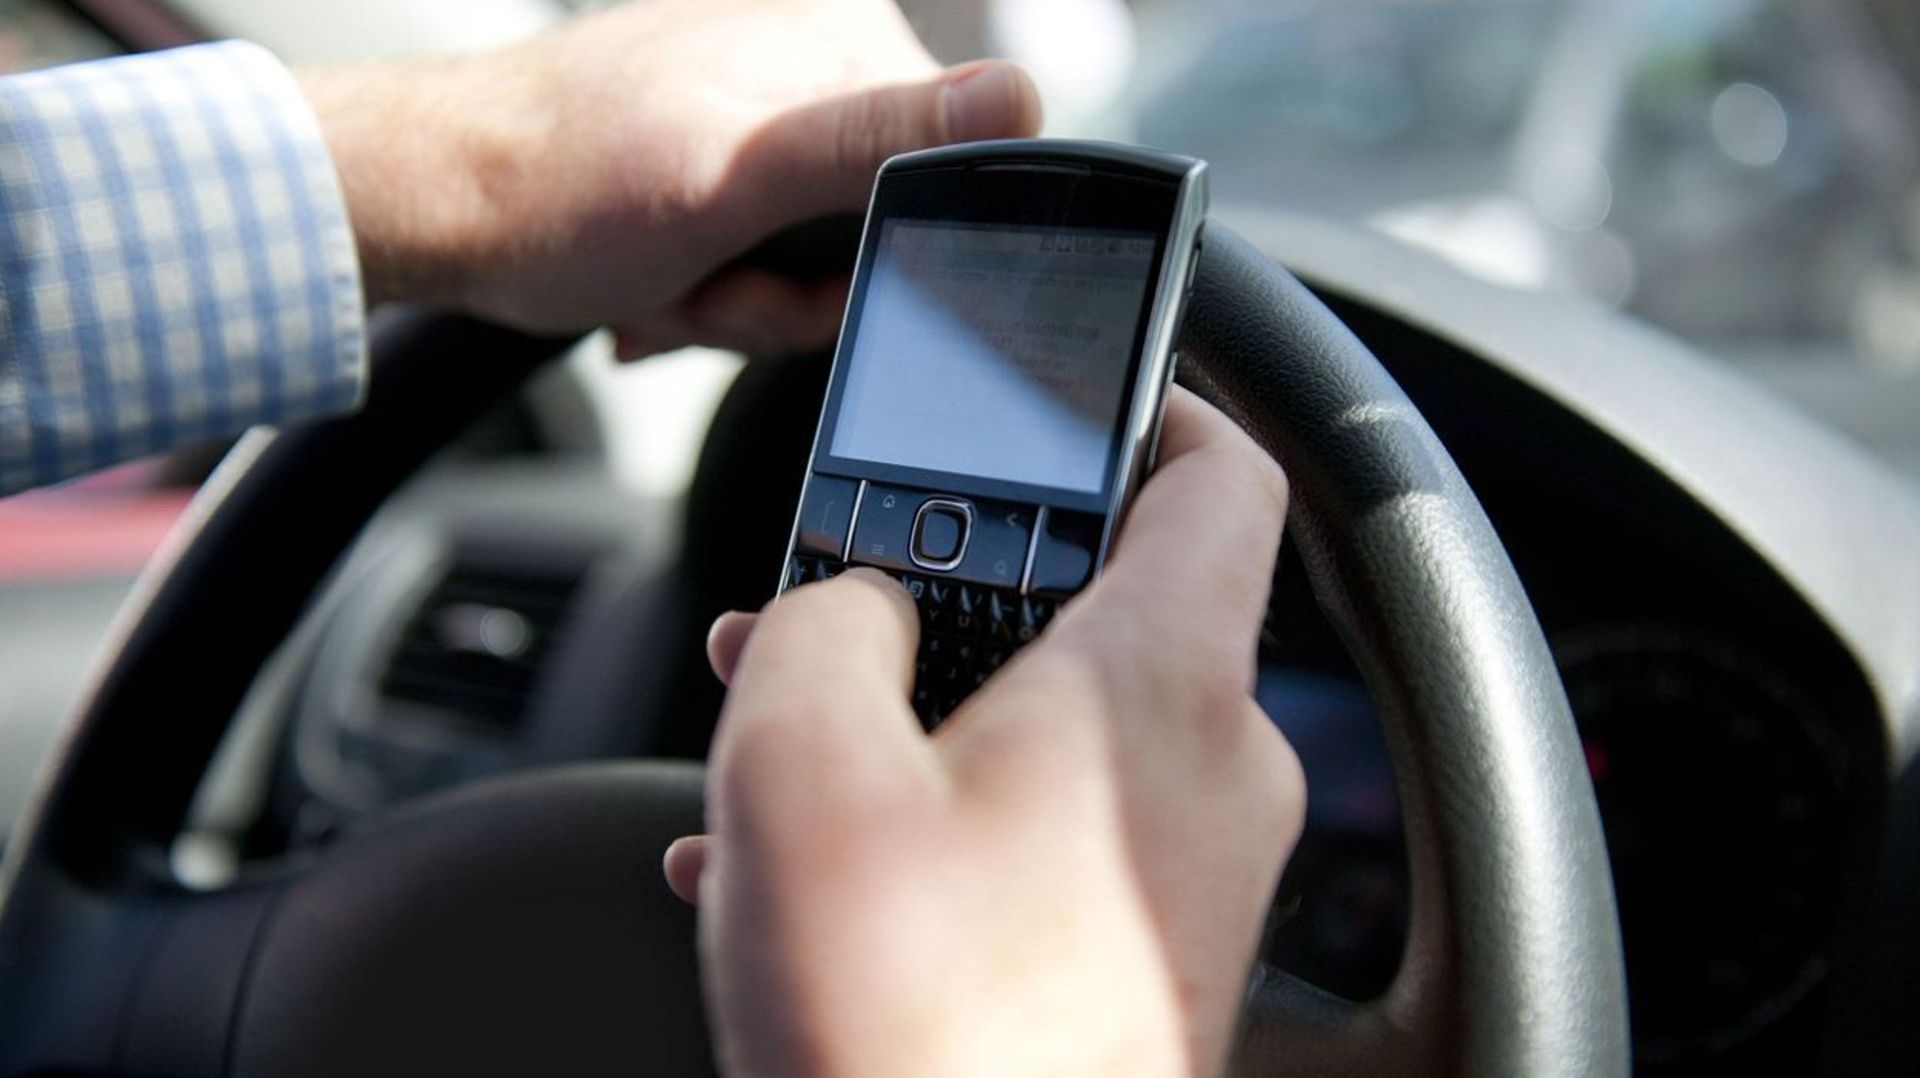 Un automobiliste bruxellois sur cinq utilise régulièrement son smartphone sans kit mains-libres